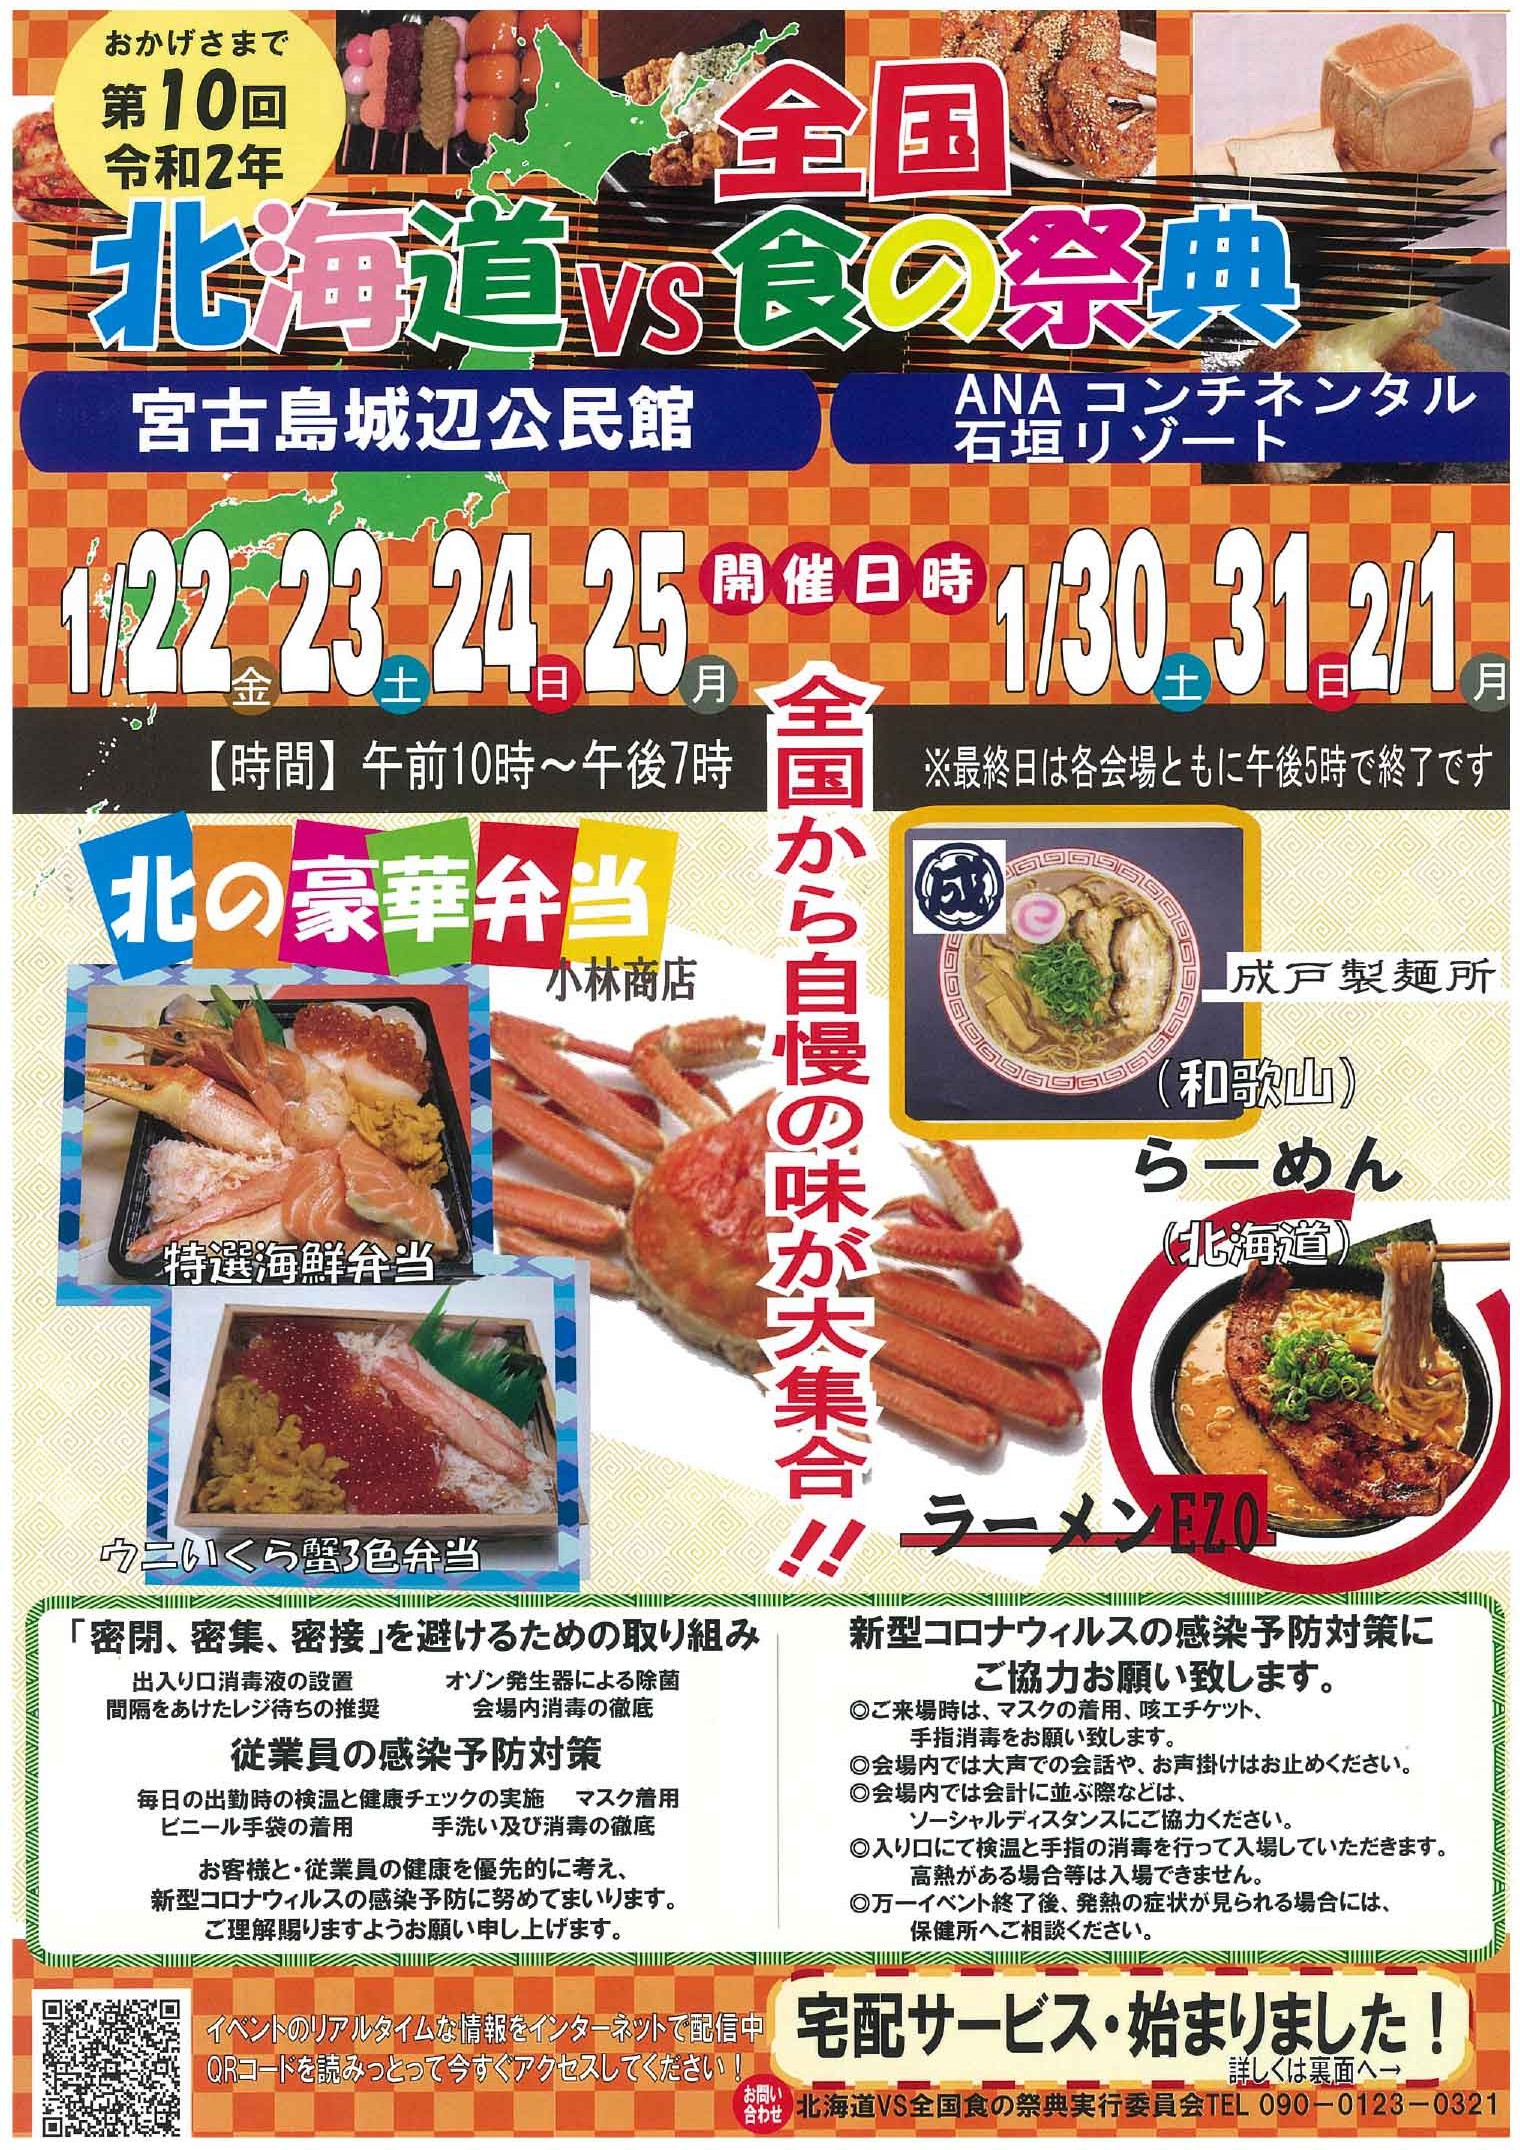 21 北海道vs全国食の祭典 Anaコンチネンタル石垣リゾート 八重山スケジュール やいまタイム